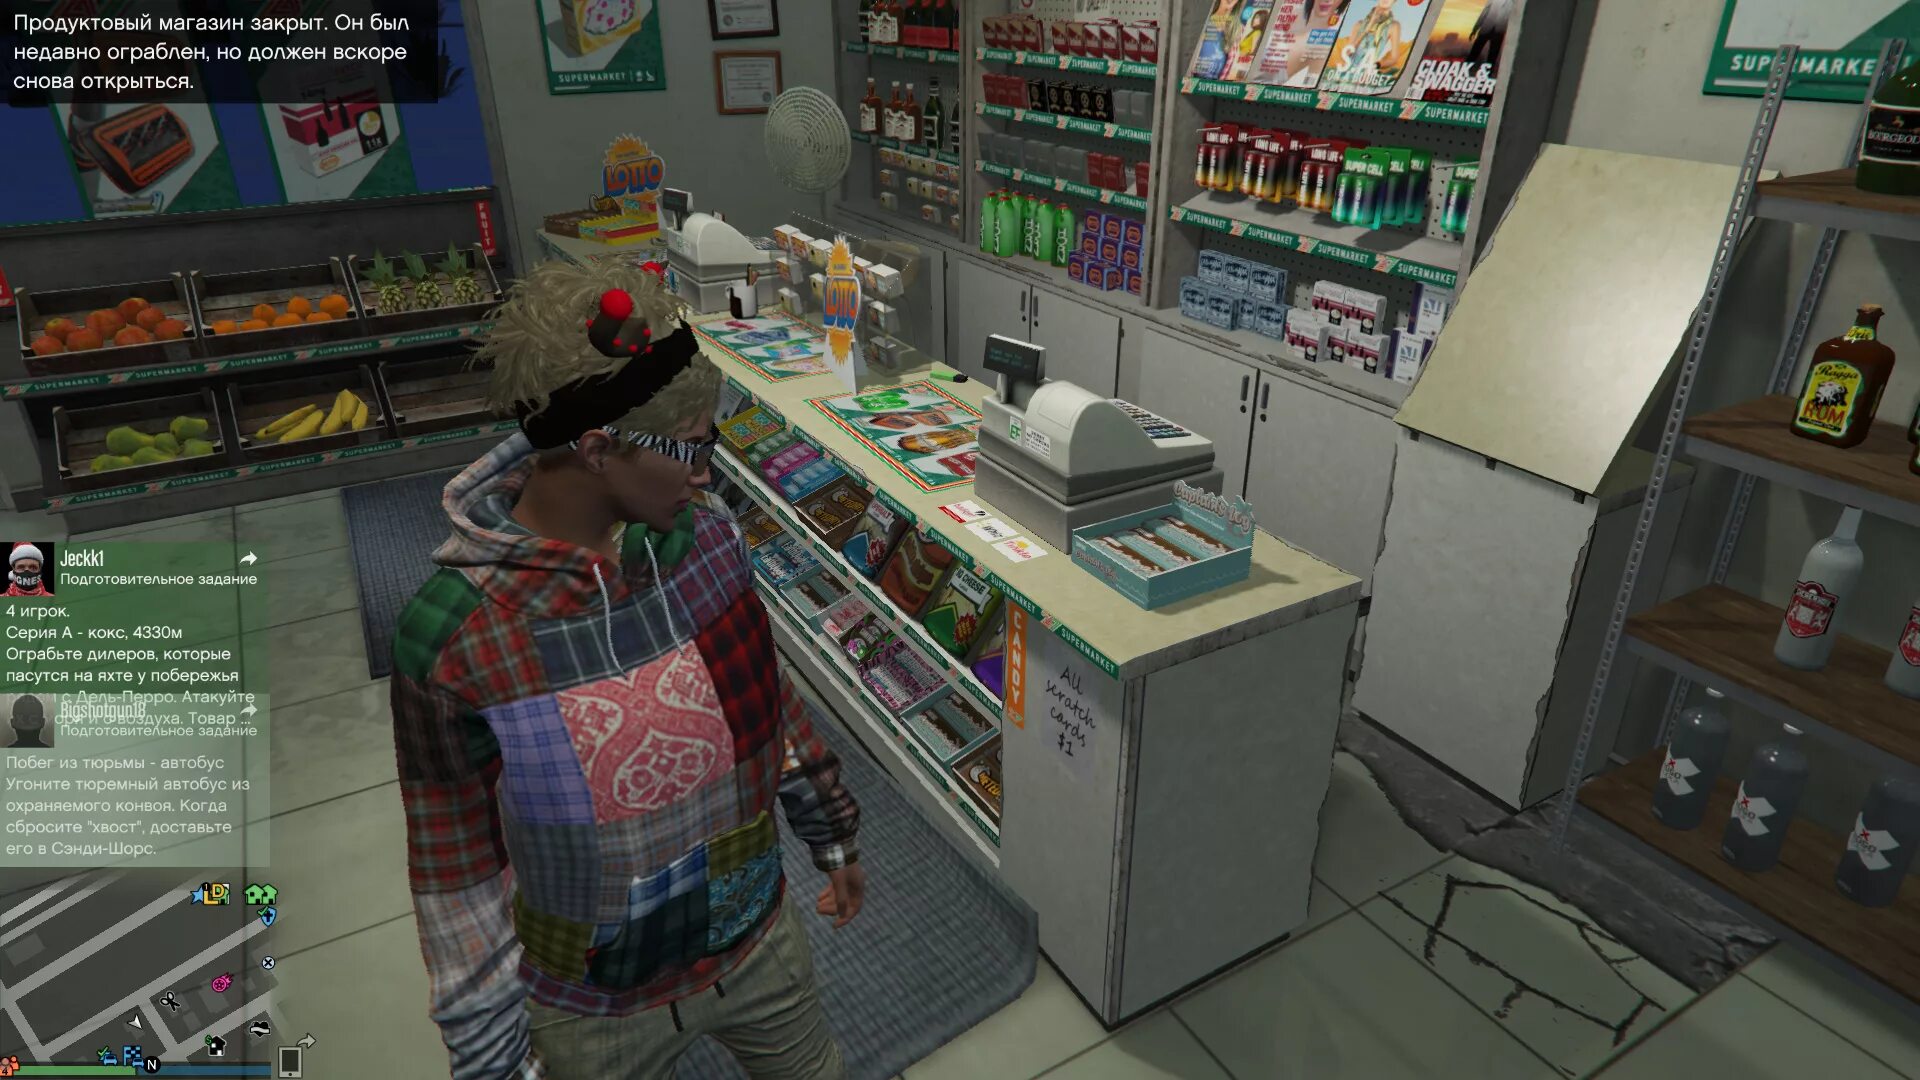 Игра грабить магазин. GTA 5 магазины для ограбления. Ограбления люберельный магазин в ГТА 5. Ограбление магазина. Игра про ограбление магазина.